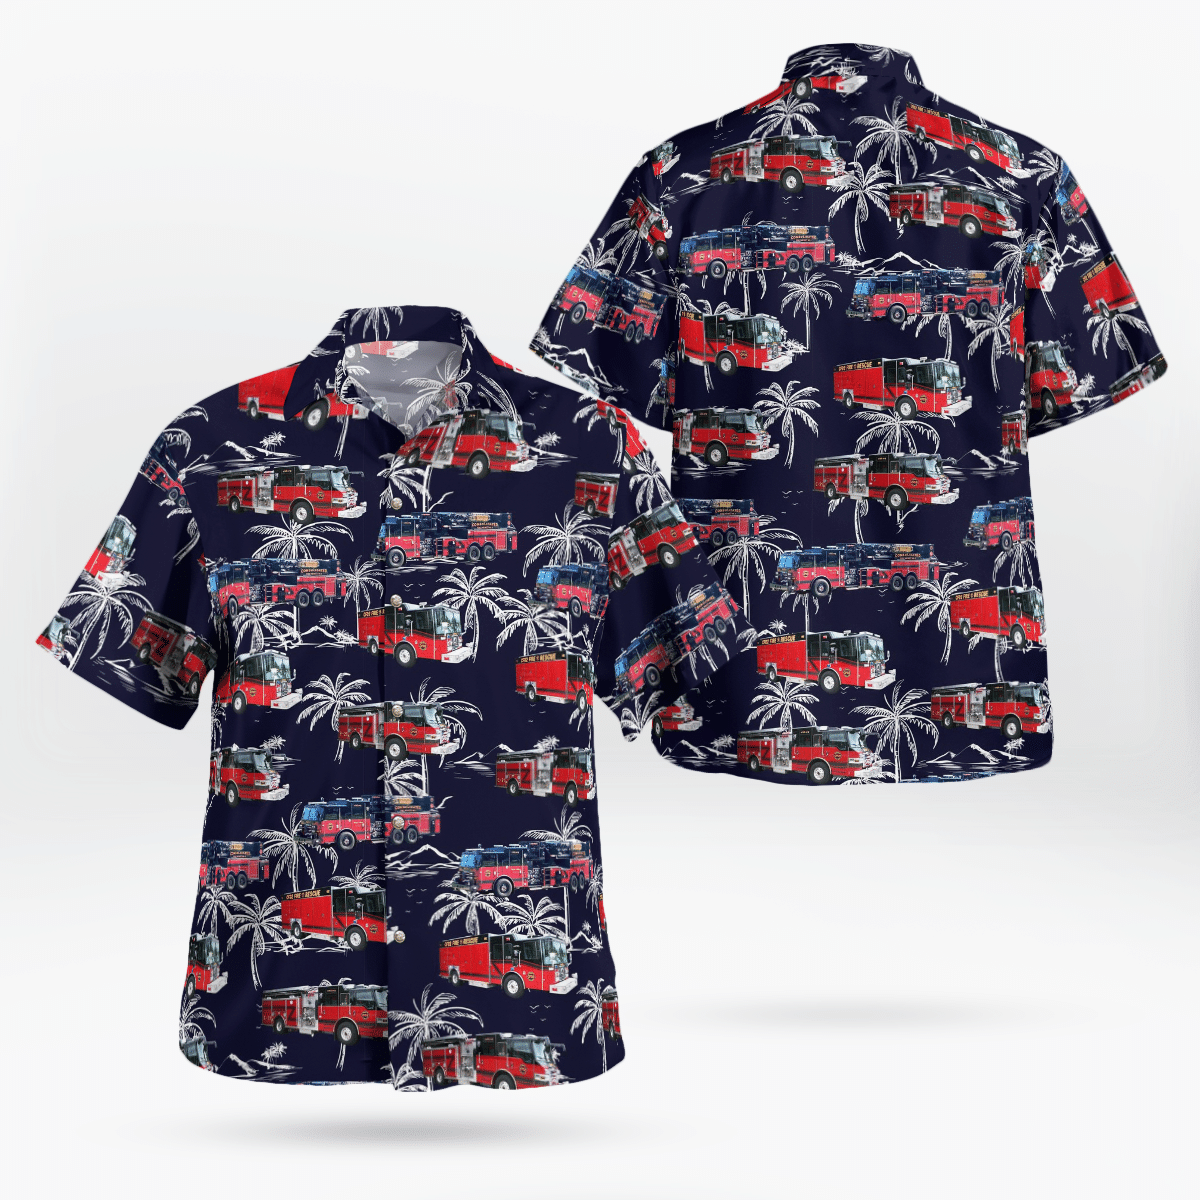 You won't regret buying these Aloha Shirt 78